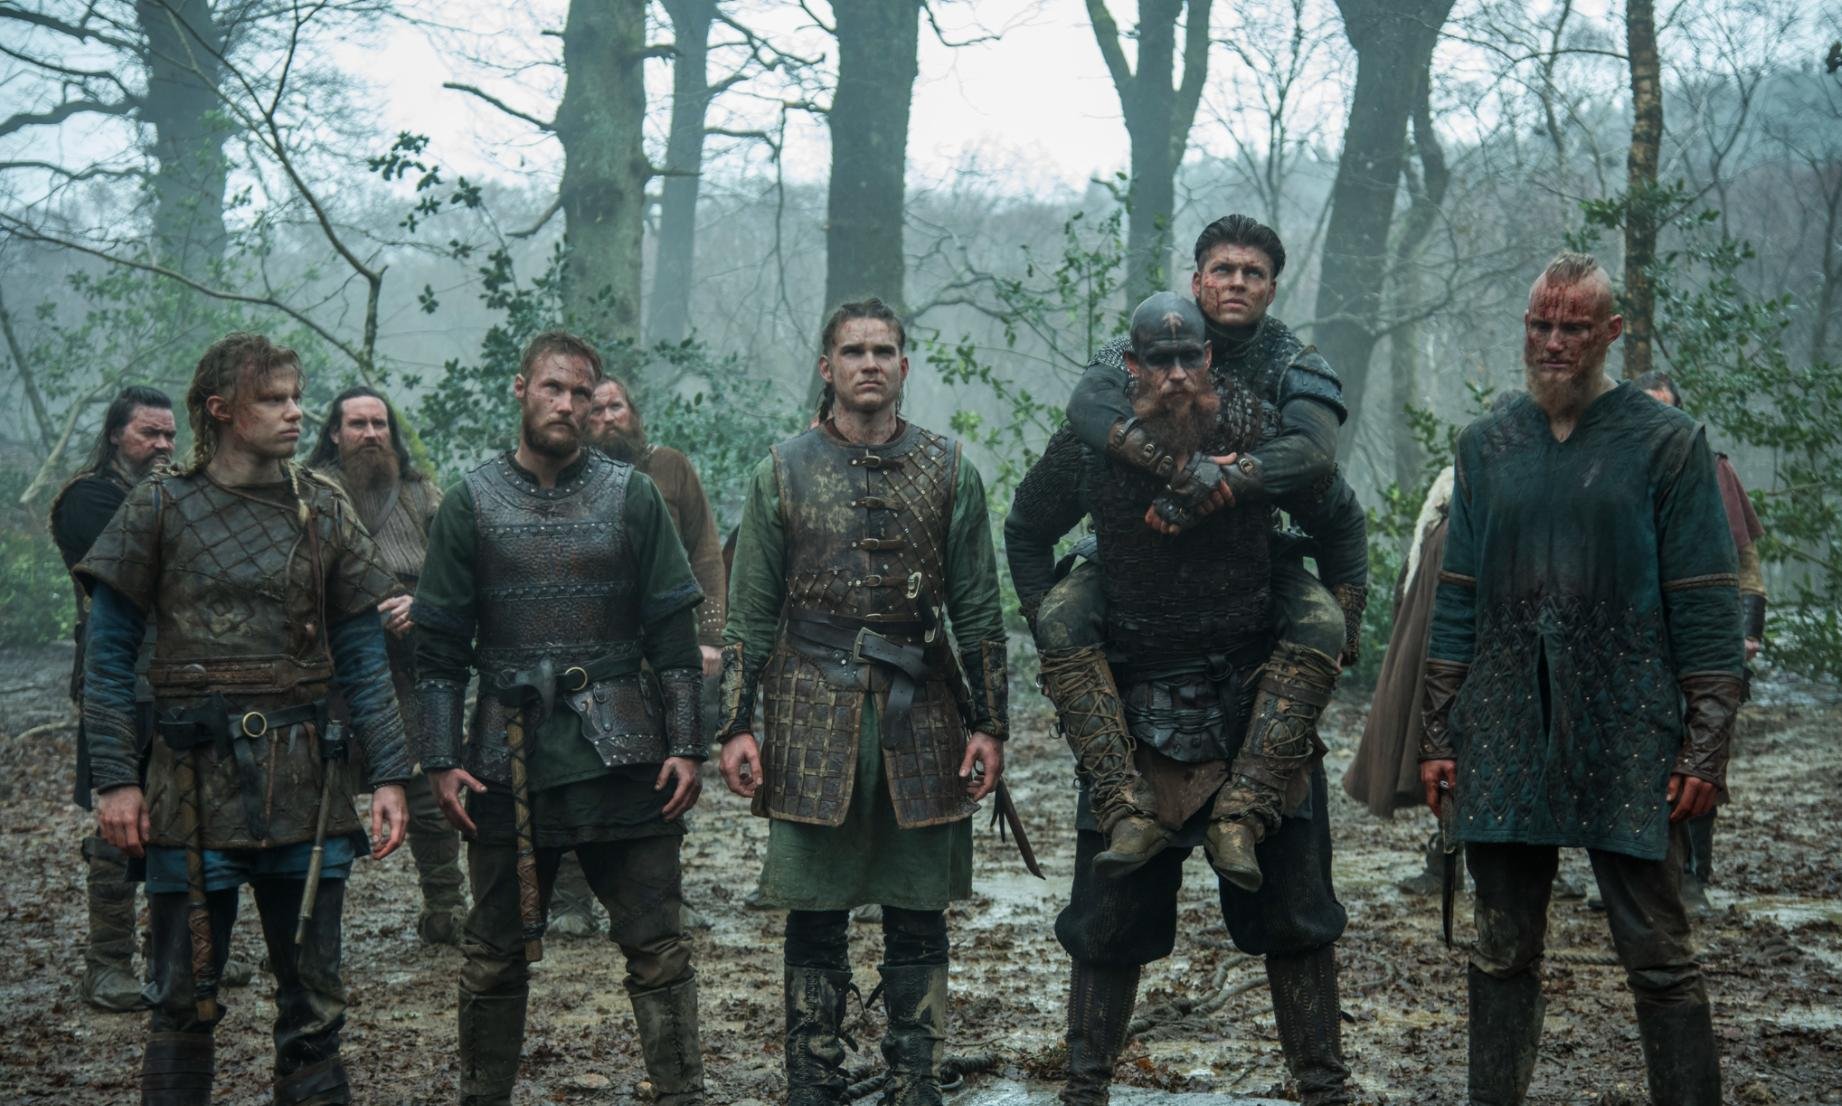 A VINGANÇA DOS FILHOS DE RAGNAR 🪓👑🔥 #vikings O grande exército Vik